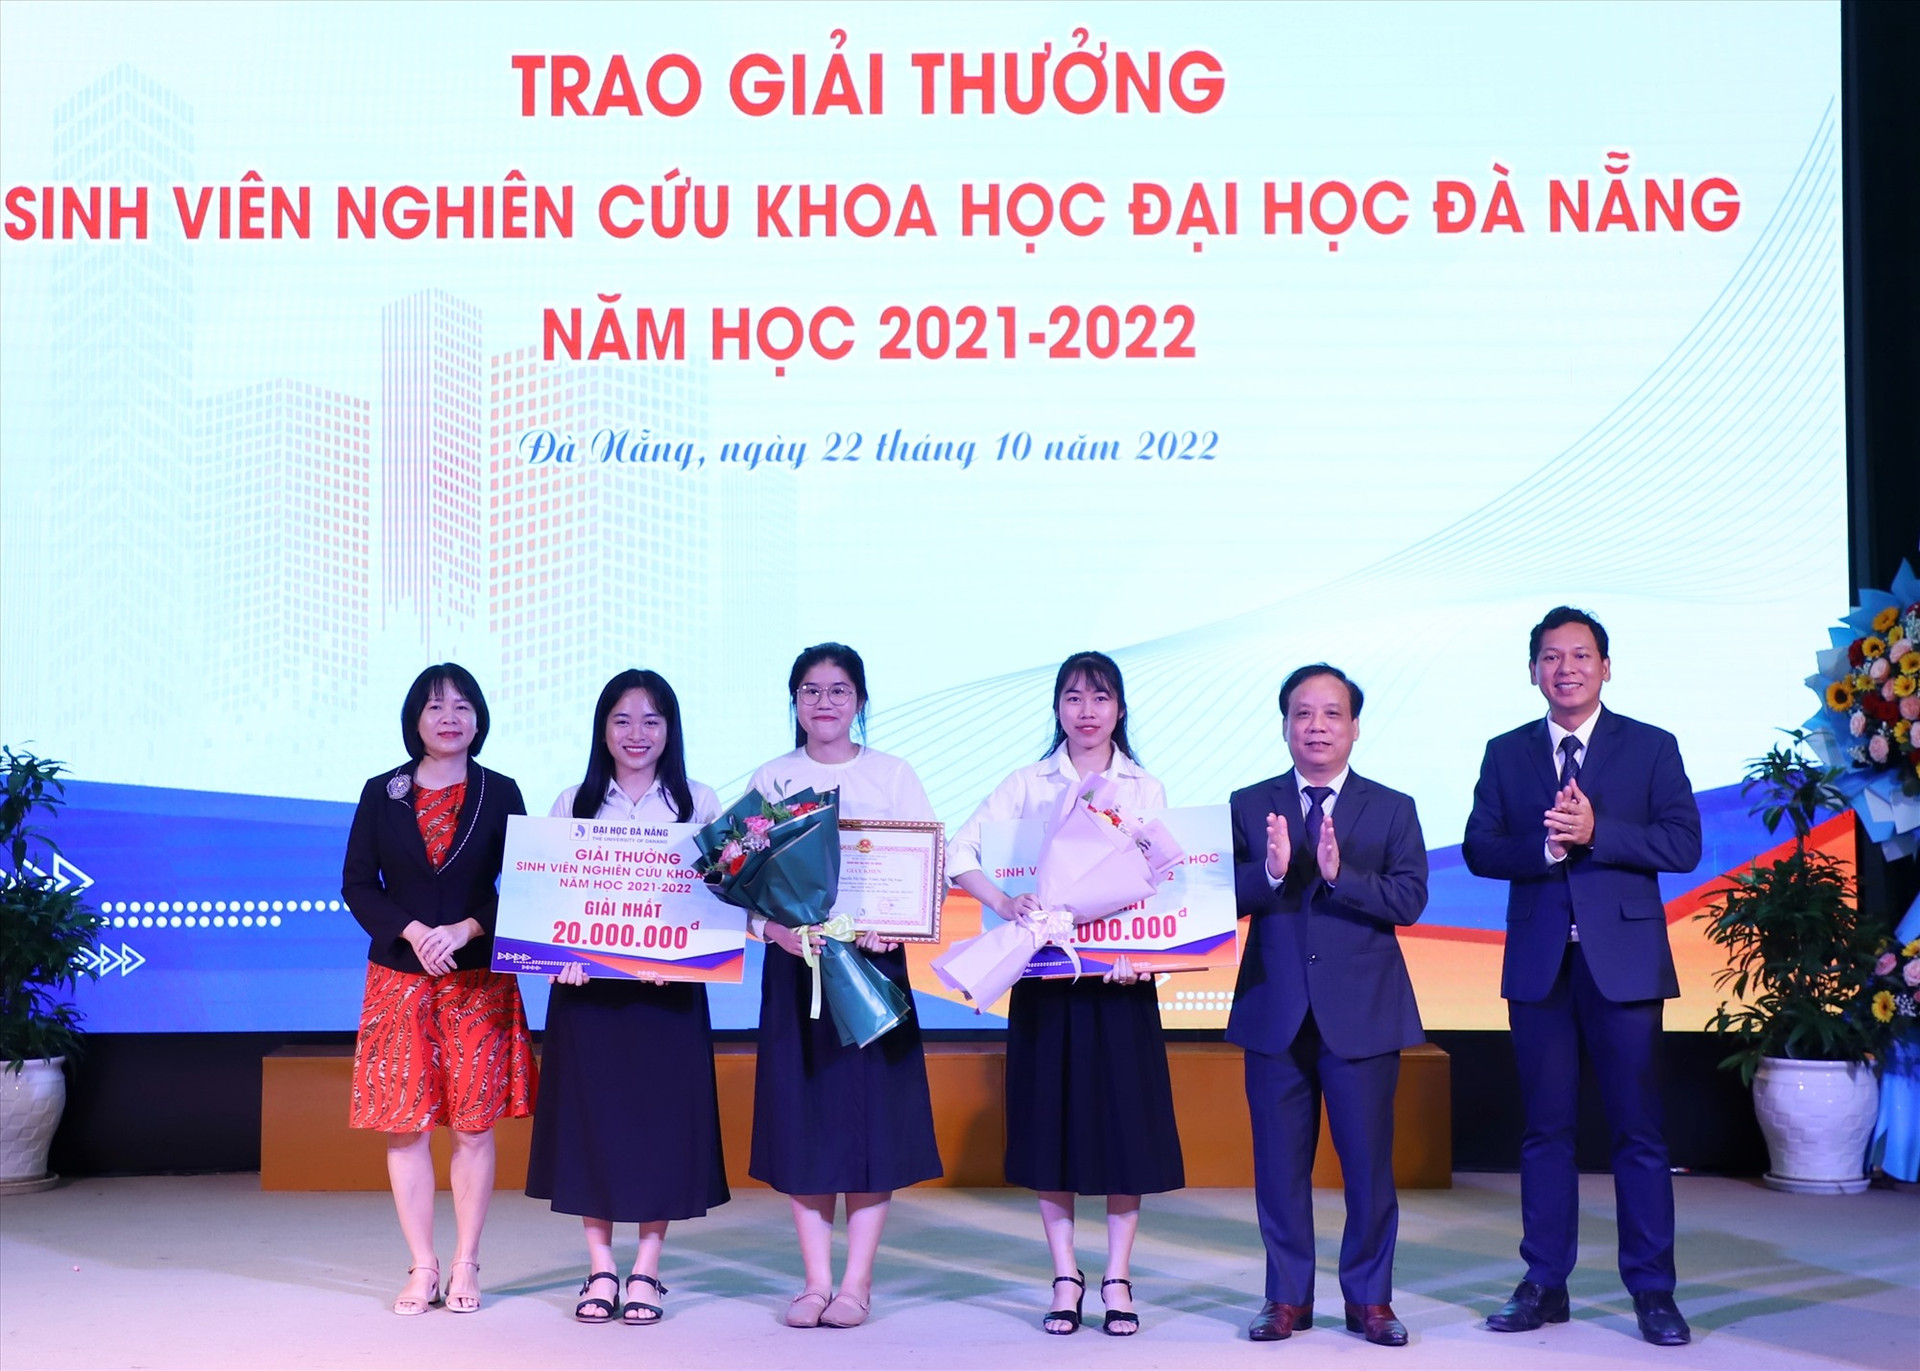 Giám đốc ĐHĐN Nguyễn Ngọc Vũ trao giấy khen và tiền thưởng cho 2 Giải Nhất Giải Sinh viên nghiên cứu khoa học năm 2021 -2022. Ảnh XL